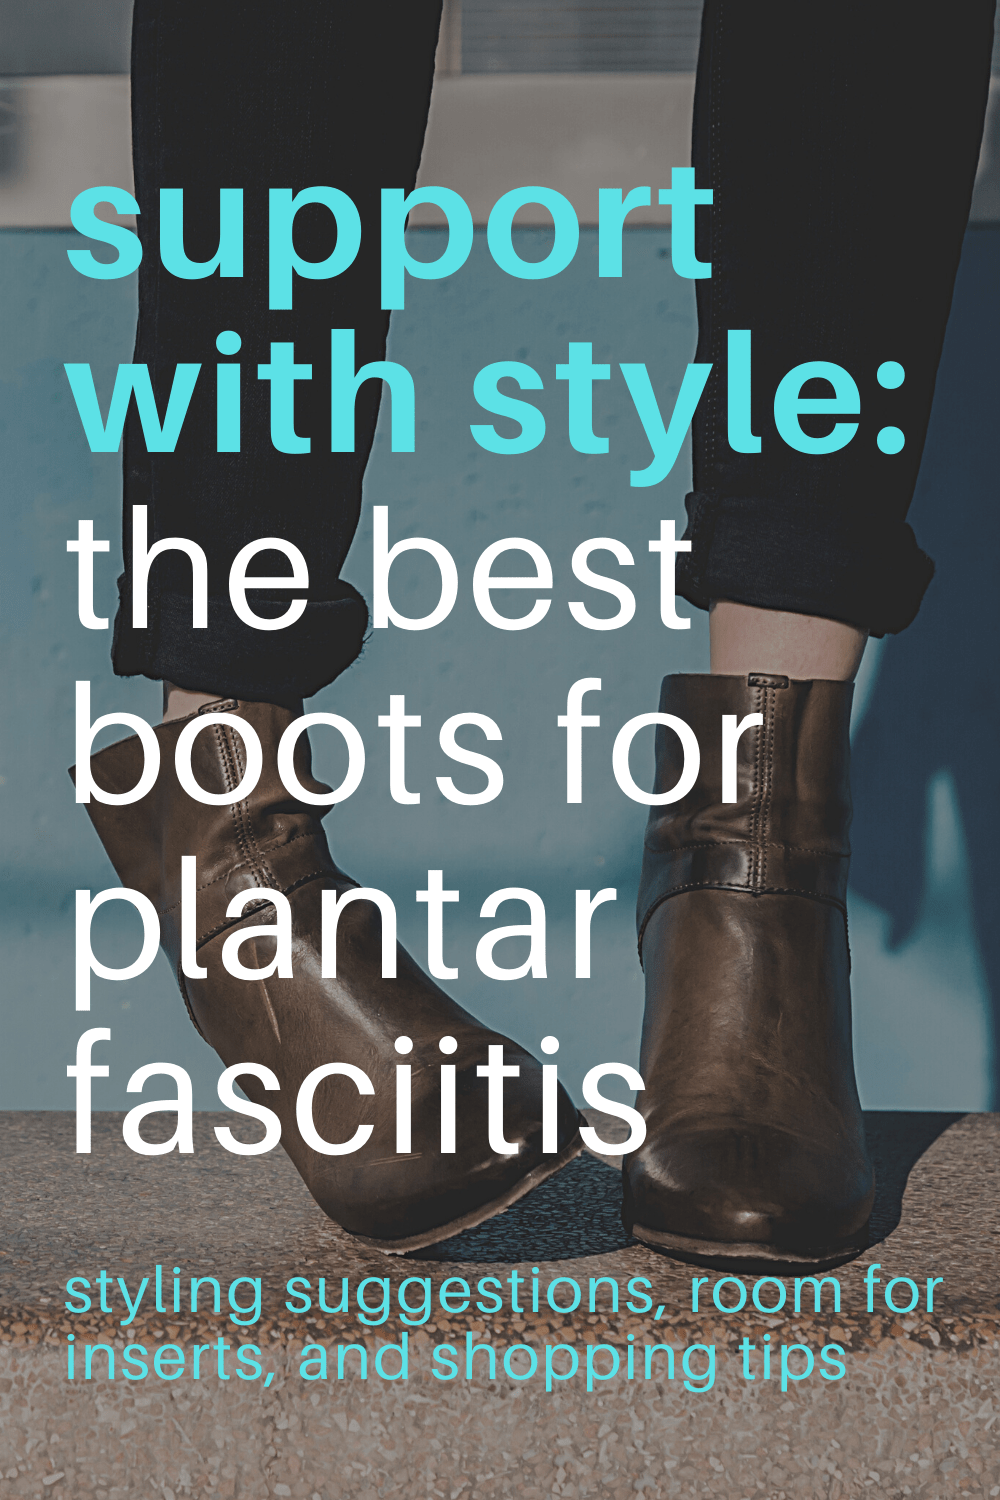 Best Boots for Plantar Fasciitis - Wardrobe Oxygen